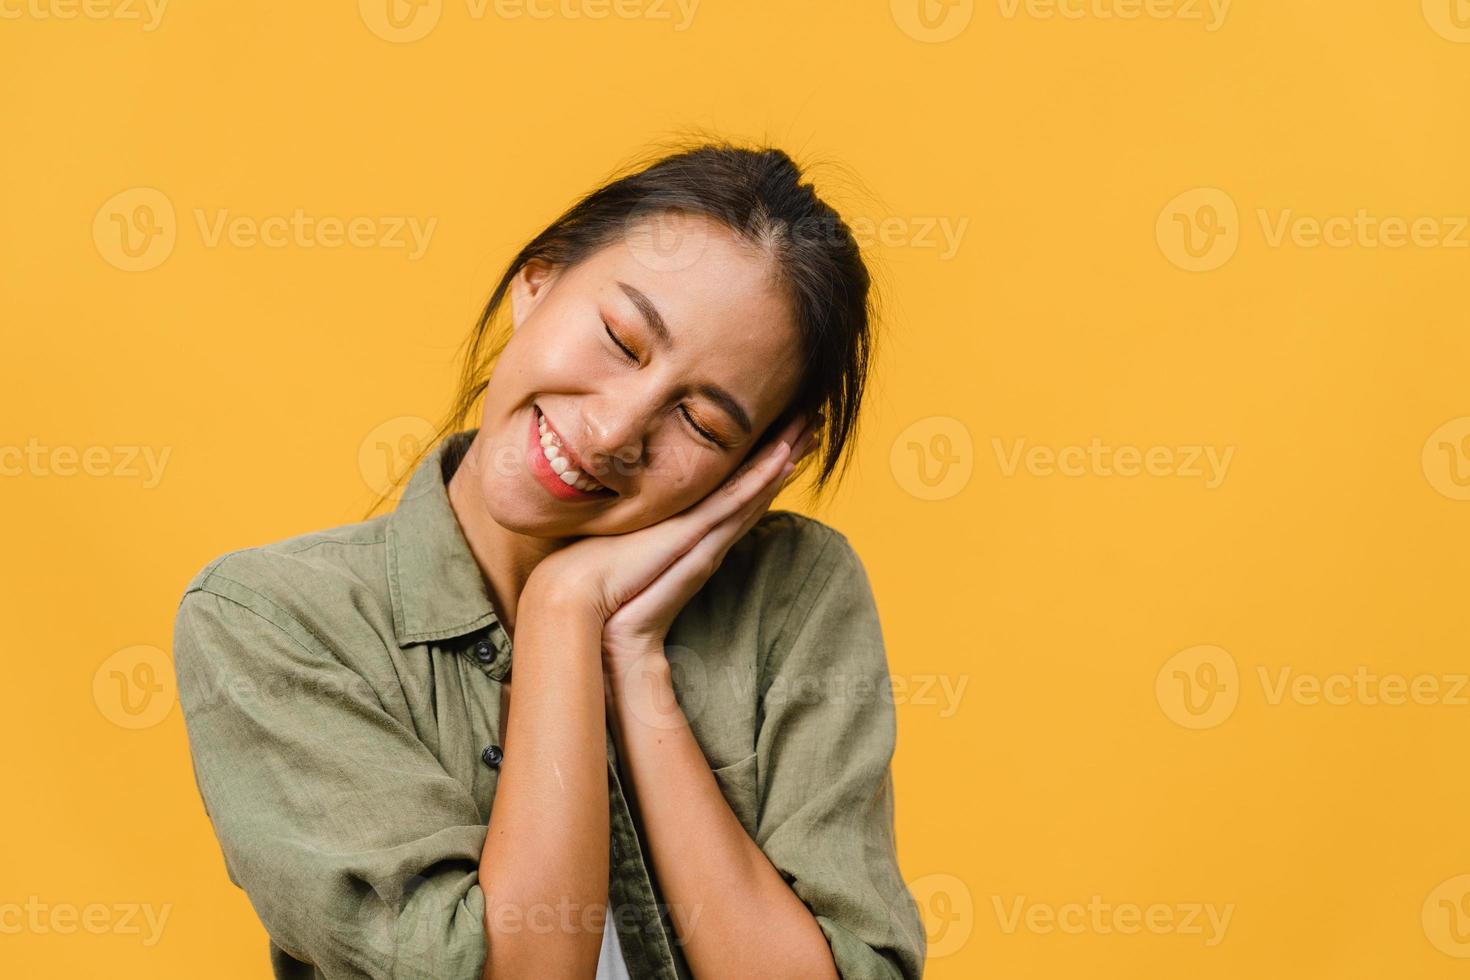 portret van jonge Aziatische dame met positieve uitdrukking, breed glimlachen, gekleed in casual kleding op gele achtergrond. gelukkige schattige blije vrouw verheugt zich over succes. gezichtsuitdrukking concept. foto